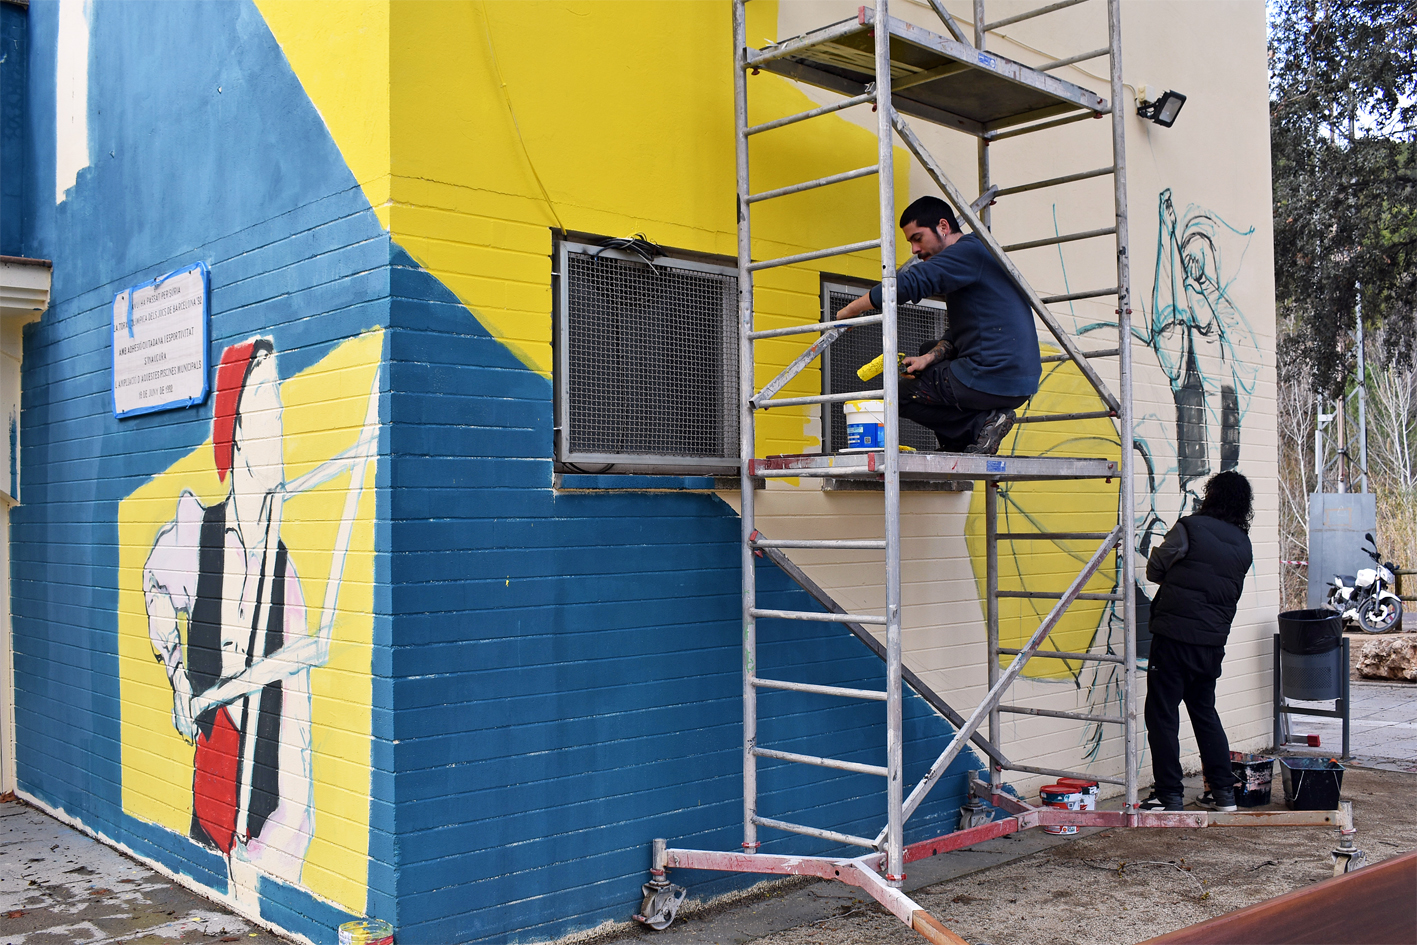 Comencen els treballs per pintar el quart mural de Caramelles al centre urbà de Súria